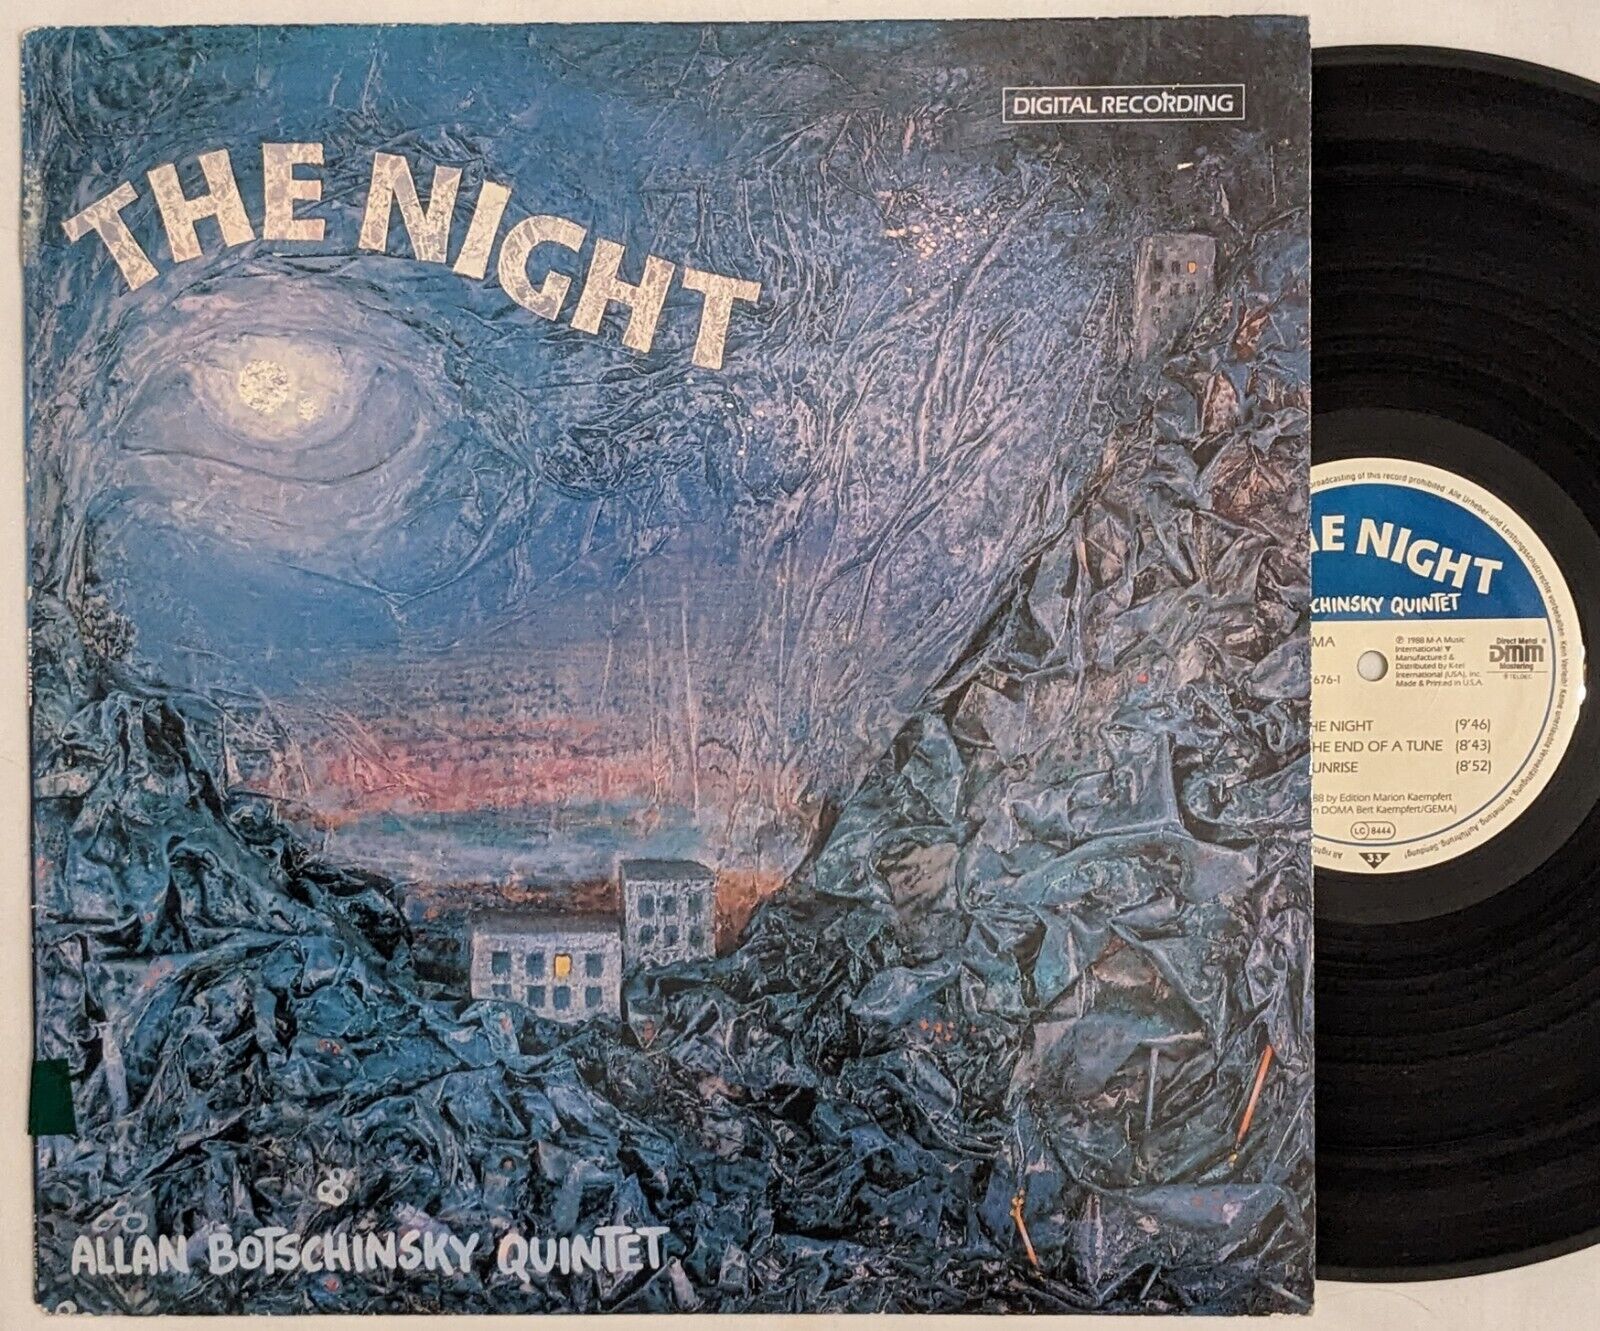 Allan Botschinsky Quintet THE NIGHT lp 1988 MA Music NU 676-1 digital DMM